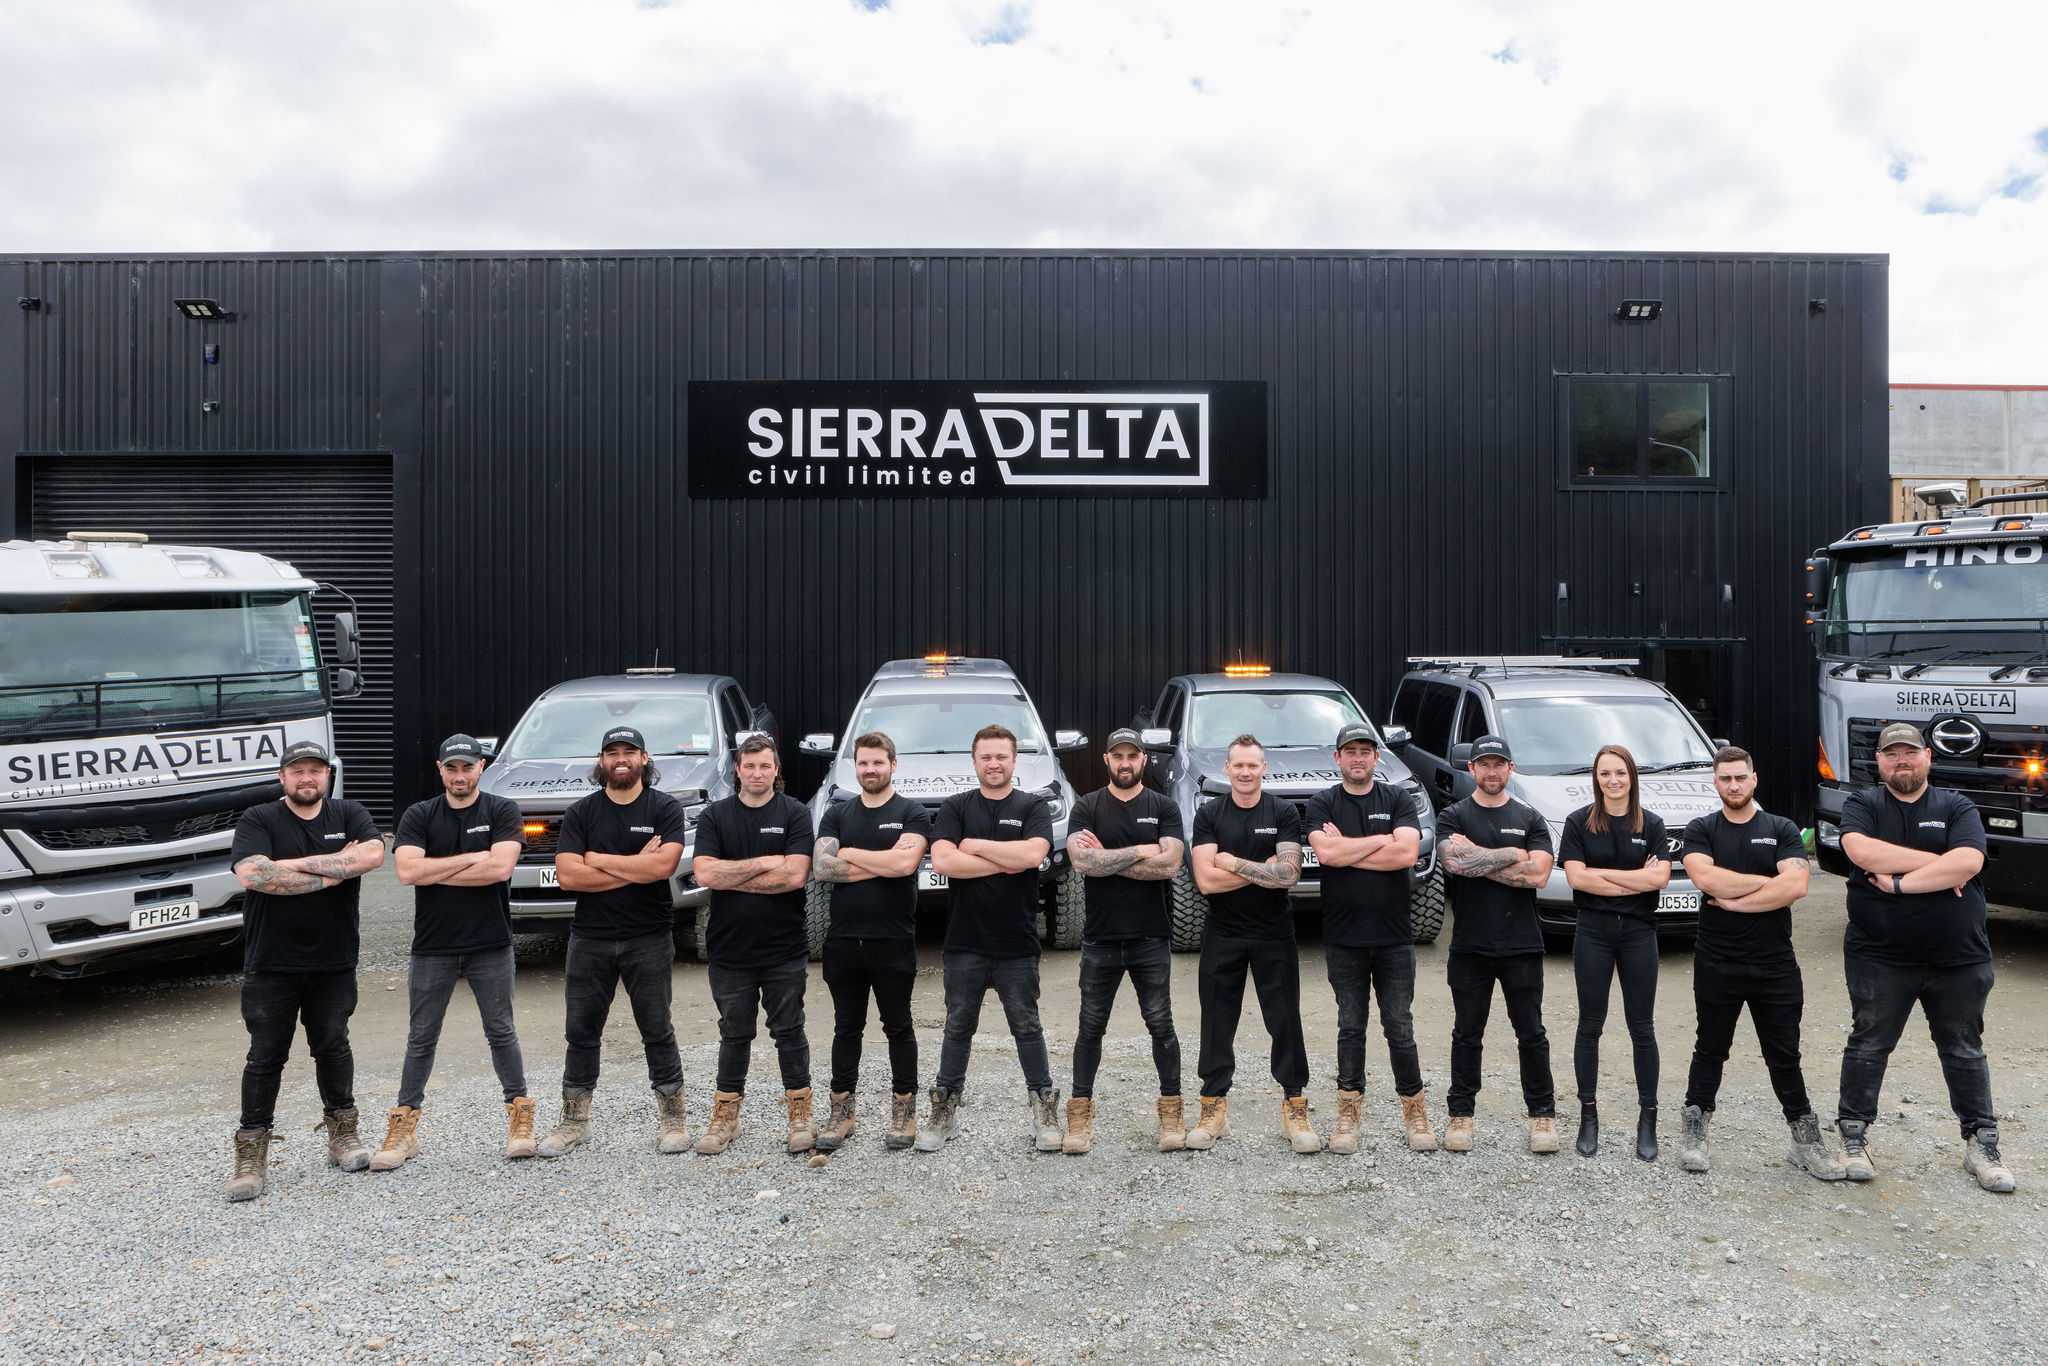 Sierra Delta team and machinery